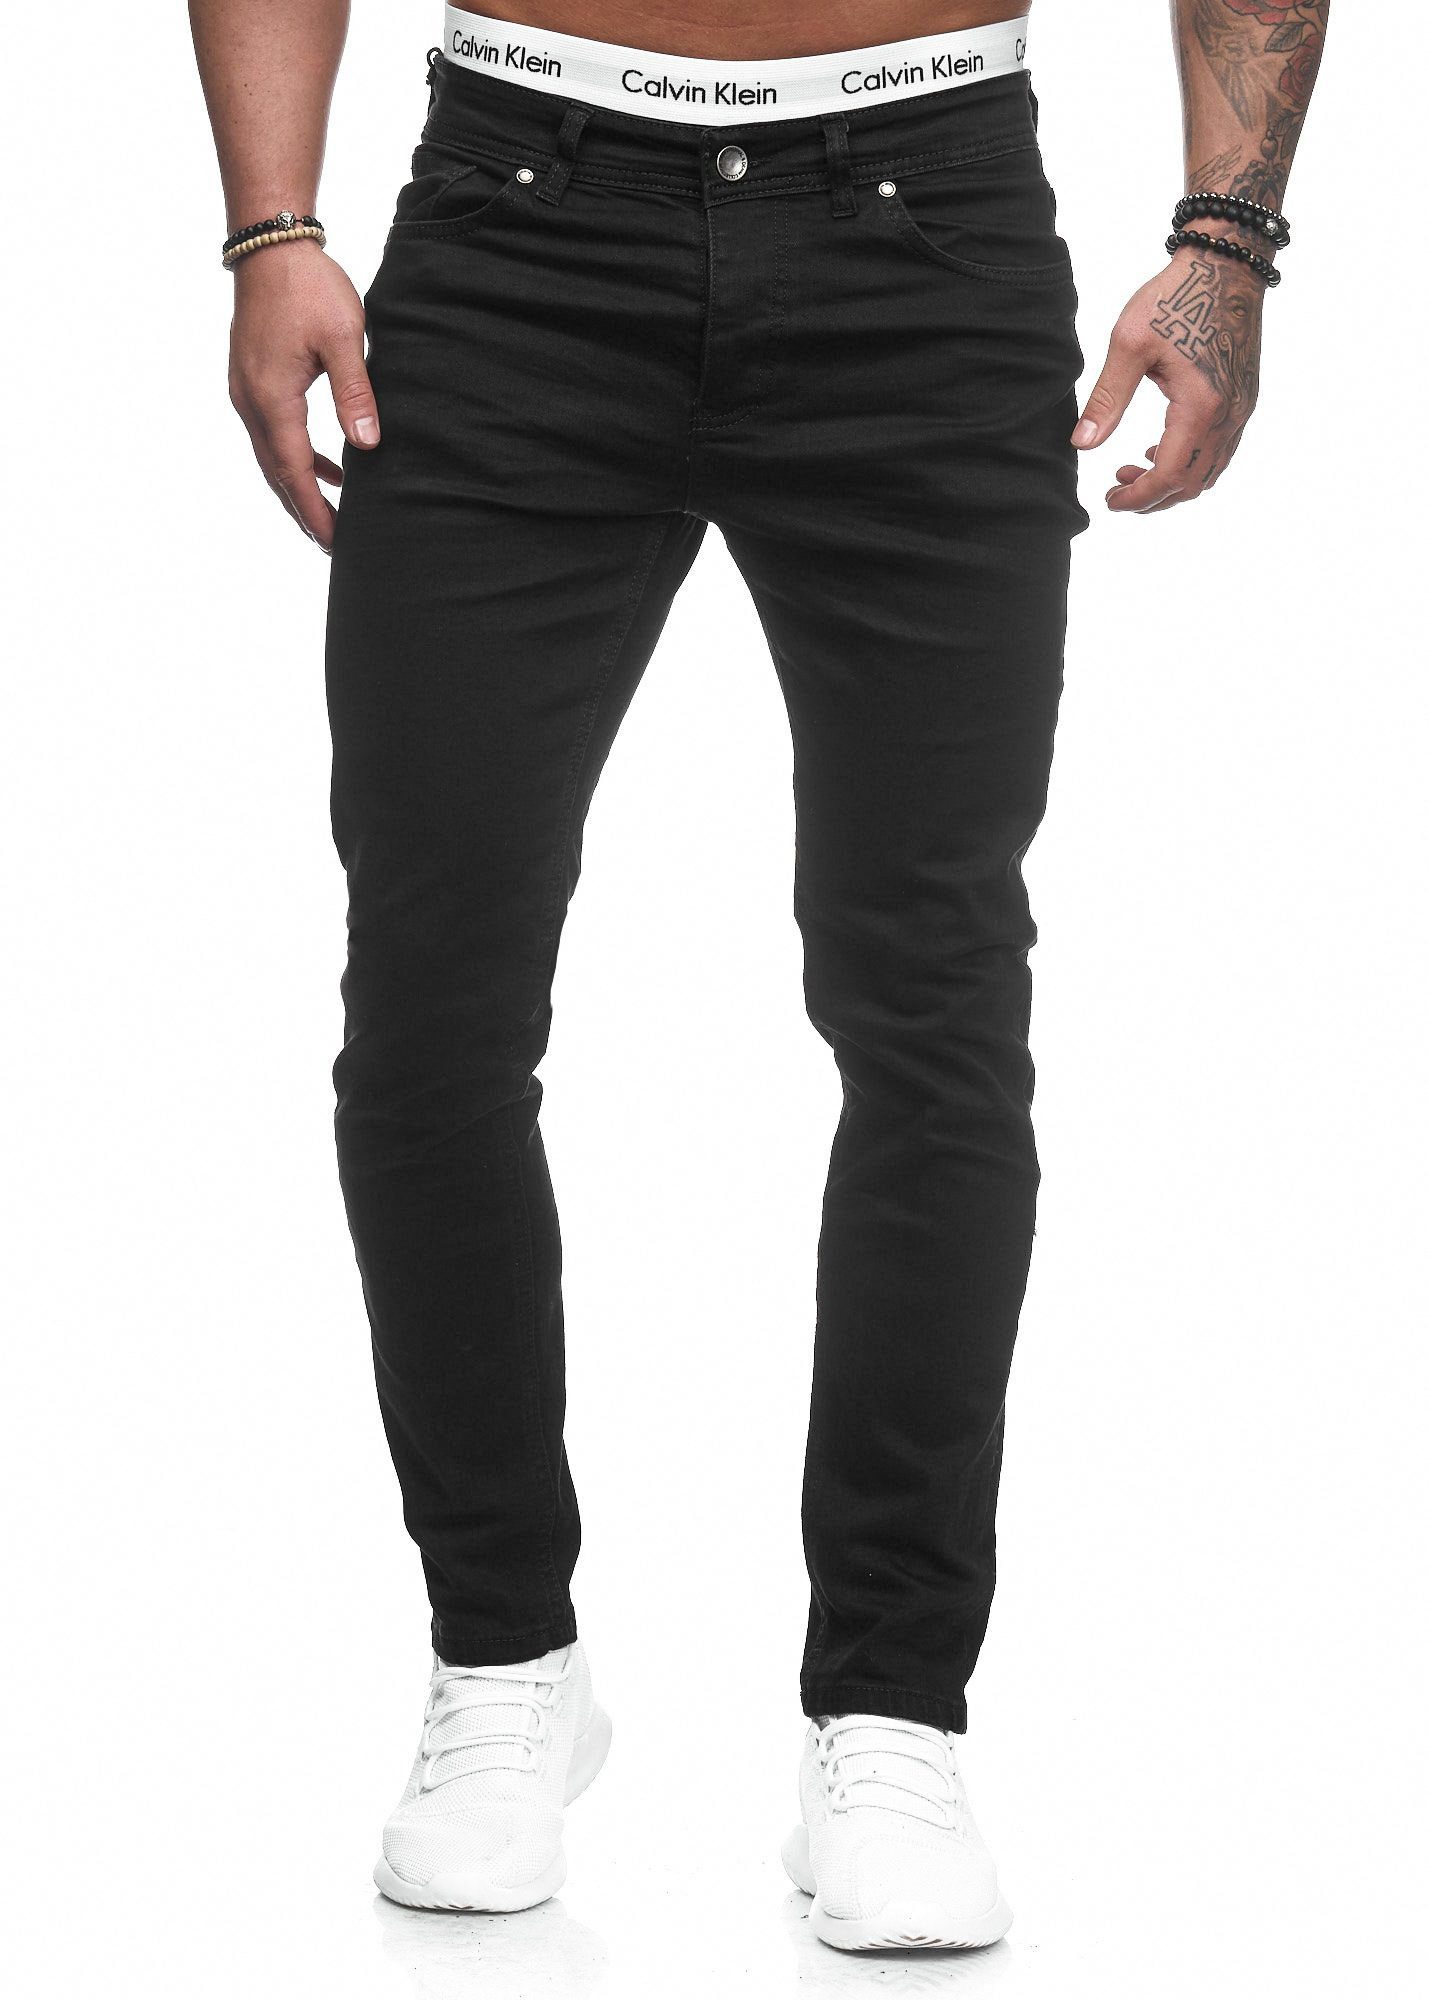 Jeans Hose Basic 5078 Fit Stretch Herren Schwarz Jeanshose Slim-fit-Jeans Designer Slim Chino Code47